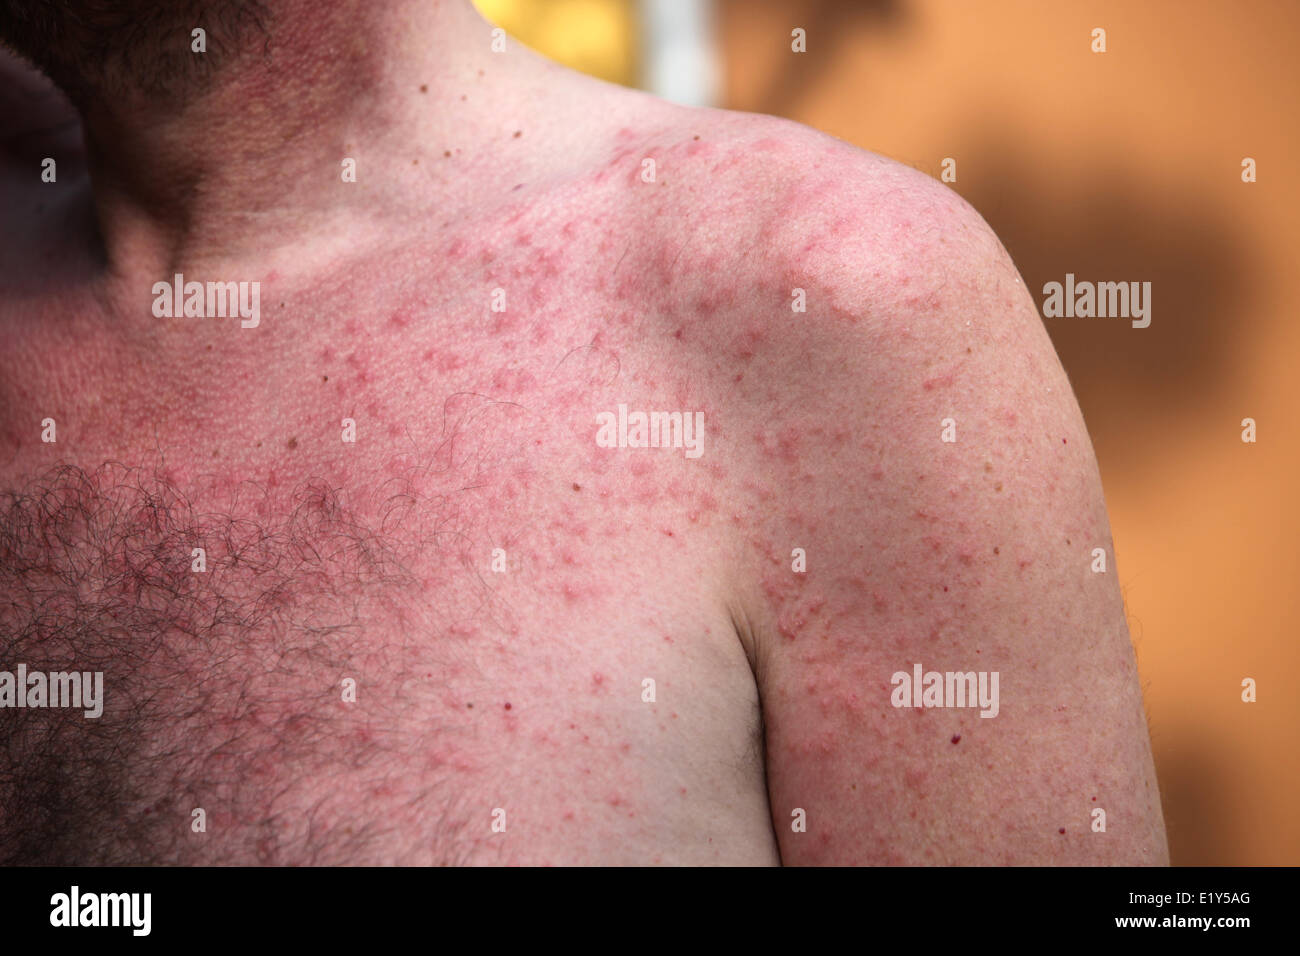 Skin rash or sun allergy Stock Photo